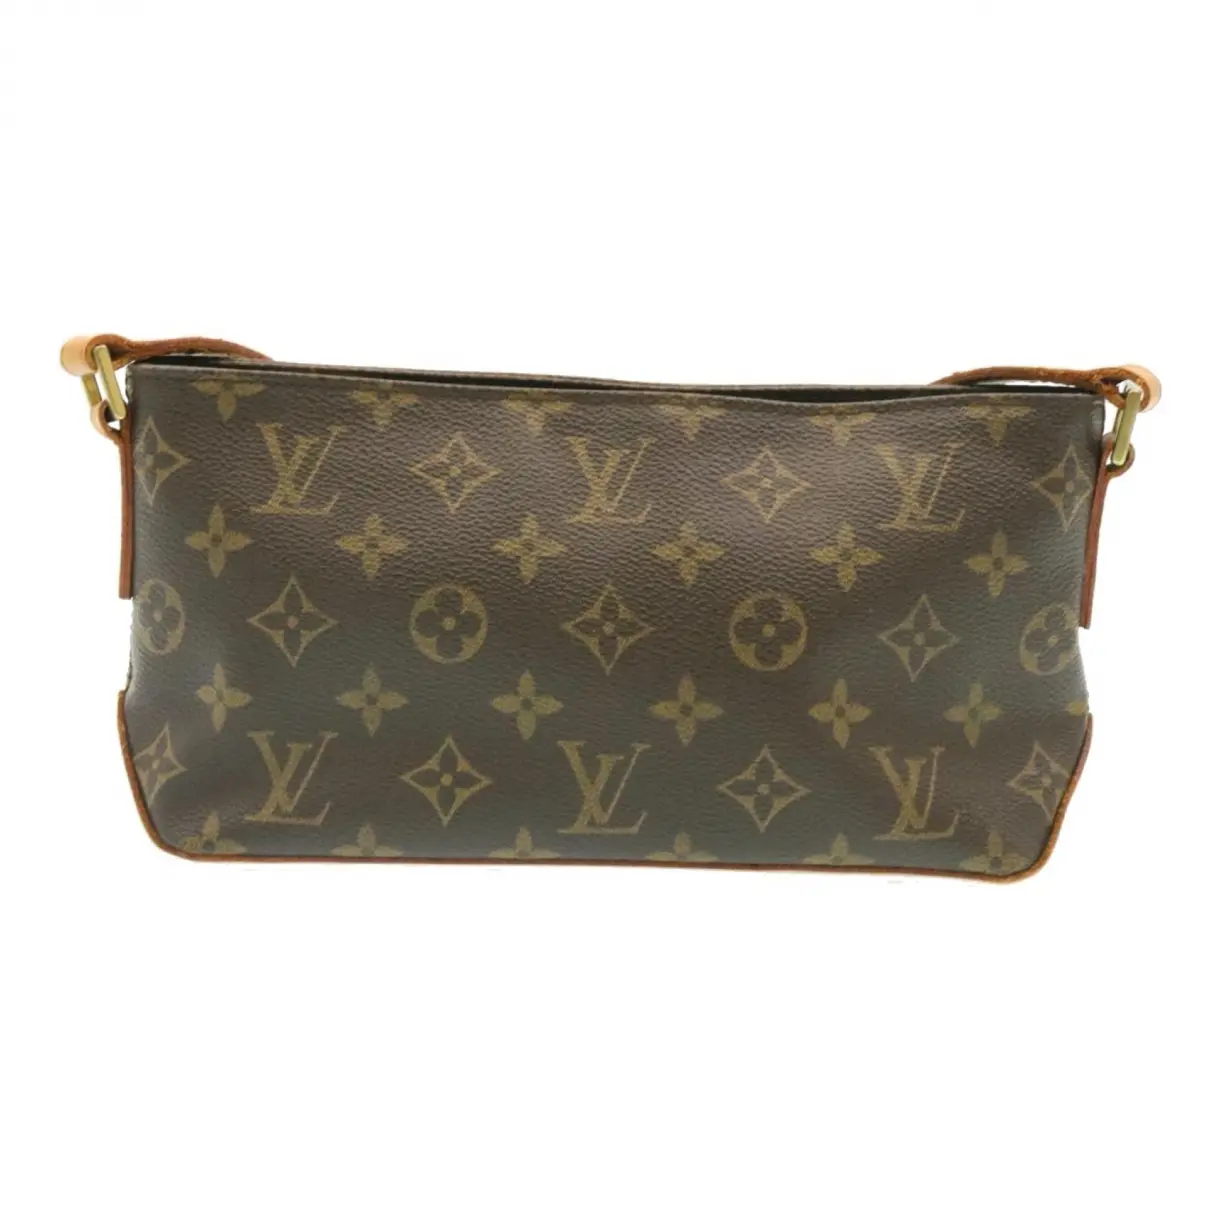 Buy Louis Vuitton Trotteur leather crossbody bag online